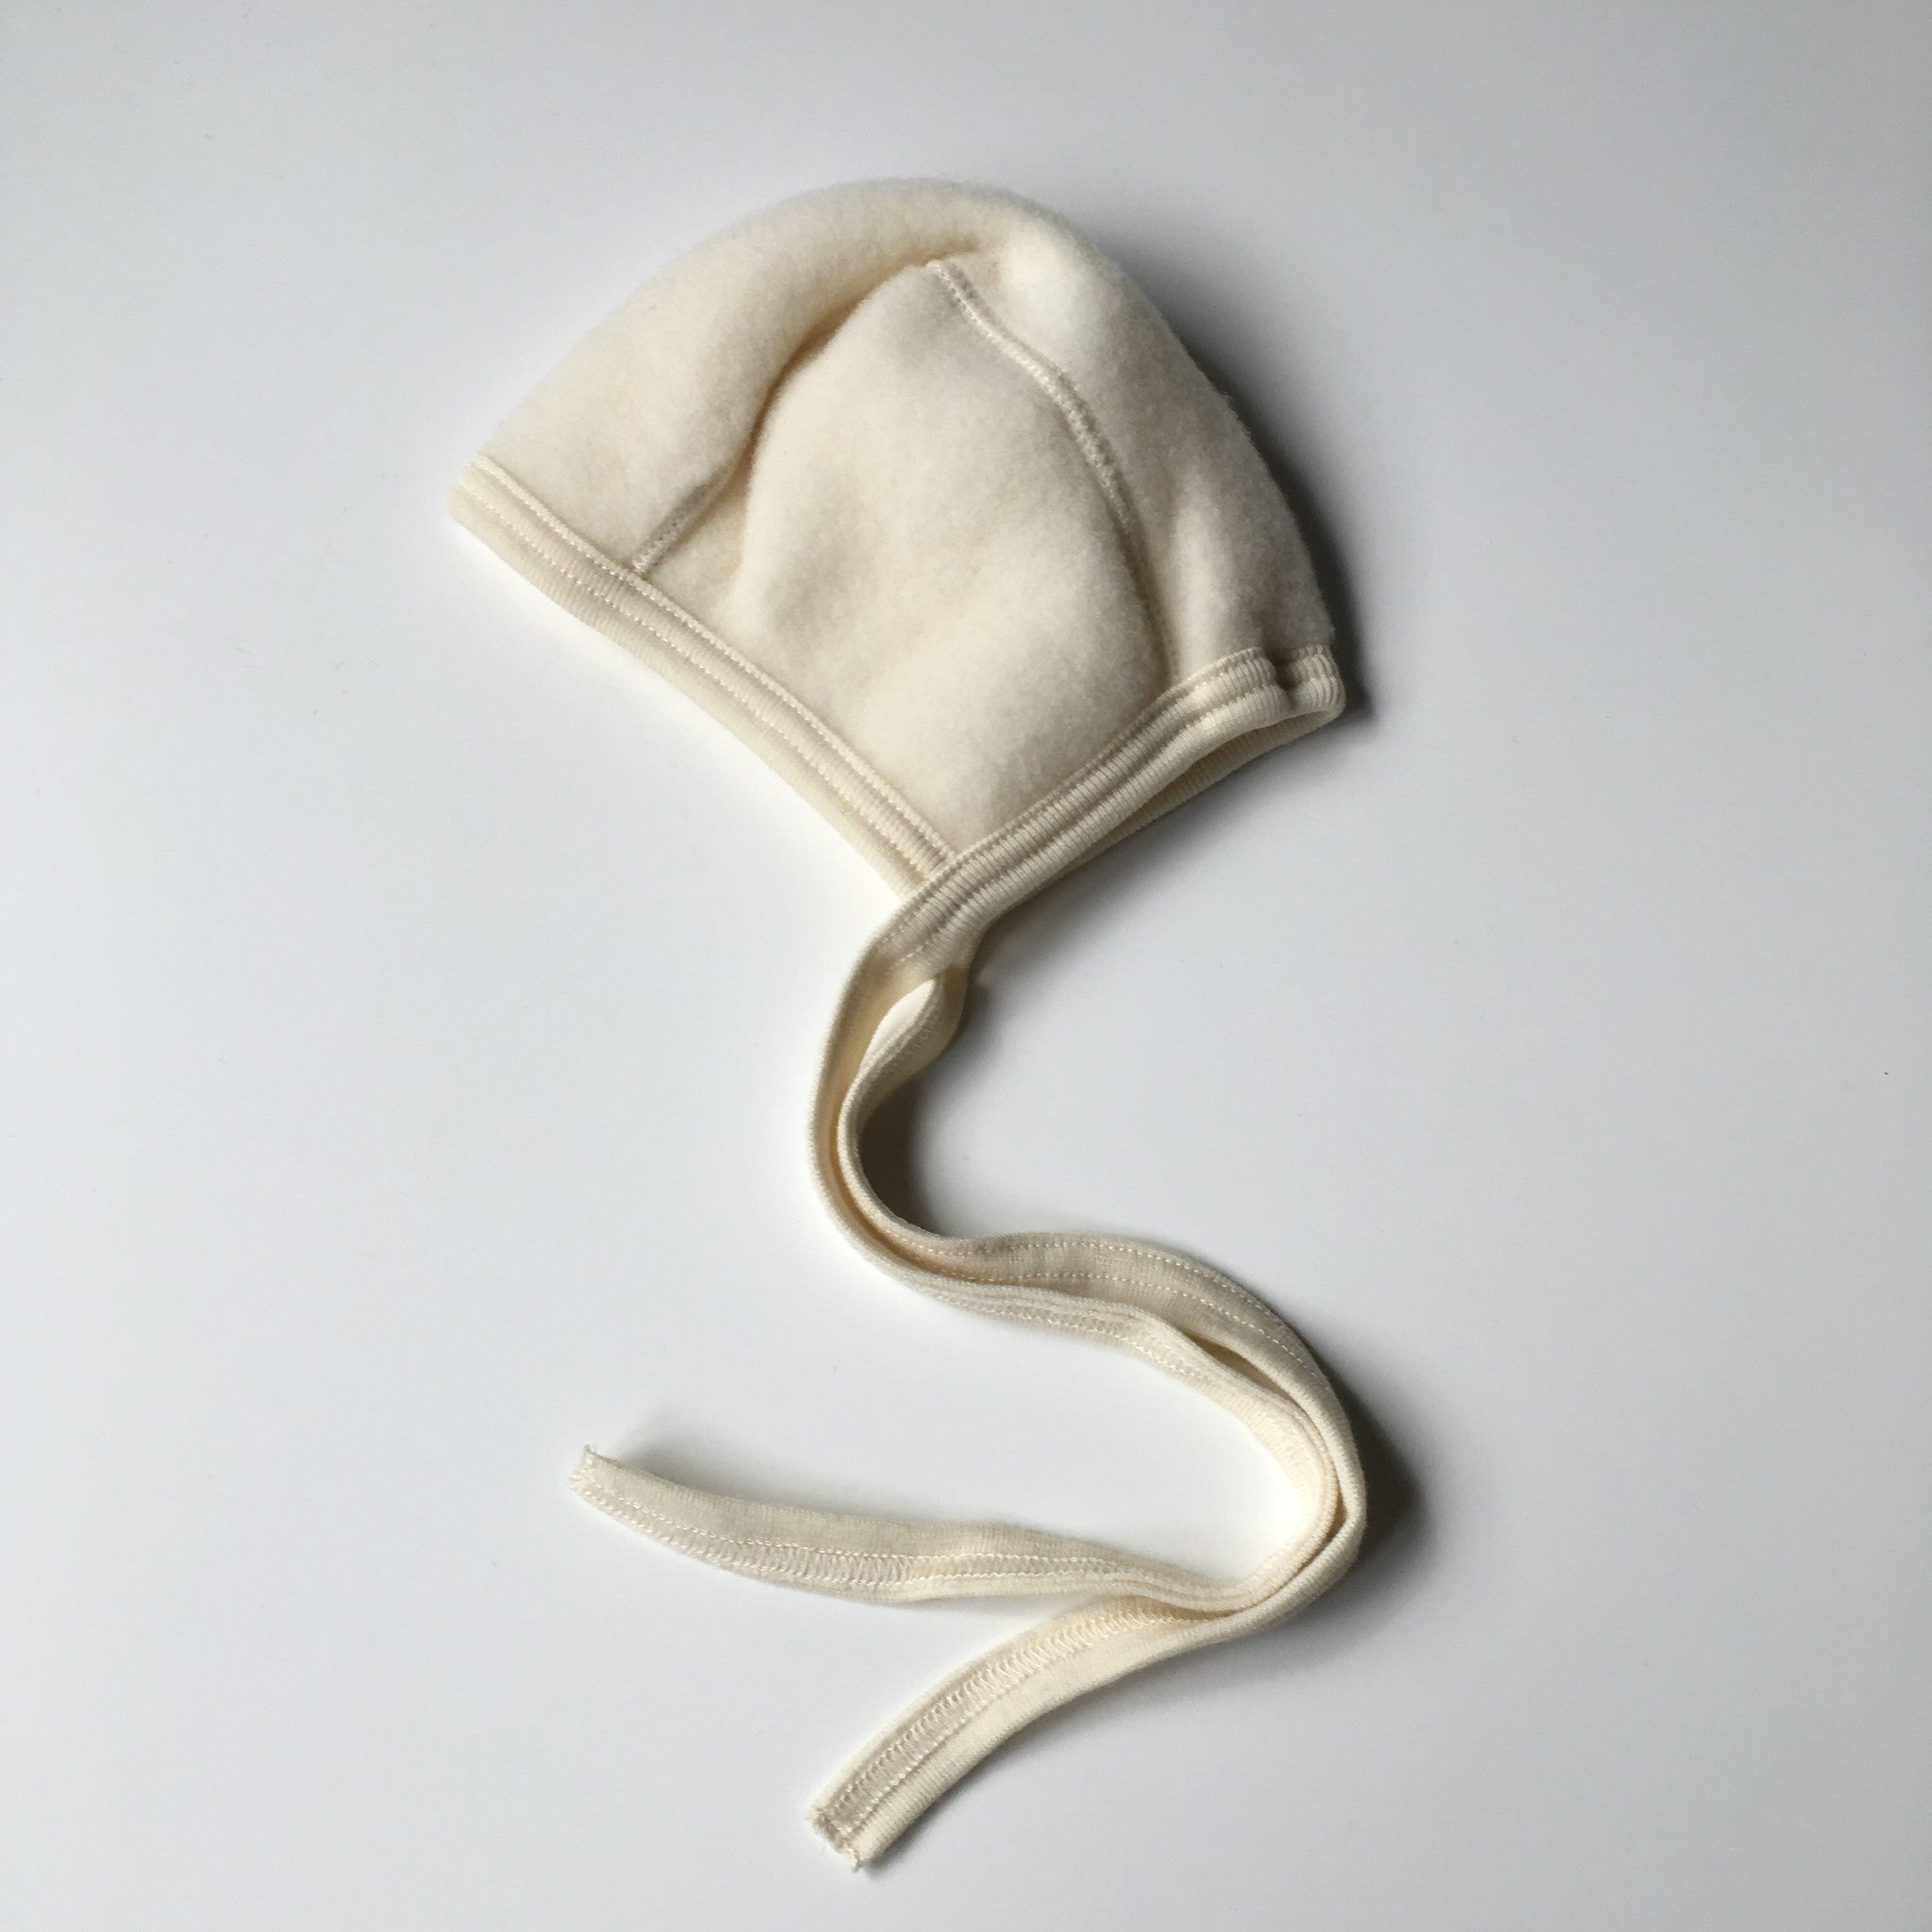 engel-natur-woolen-baby-bonnet-100-merino-wool-fle_f7a3b7d7-7ec9-4450-9a97-06d6075fb06a.jpg